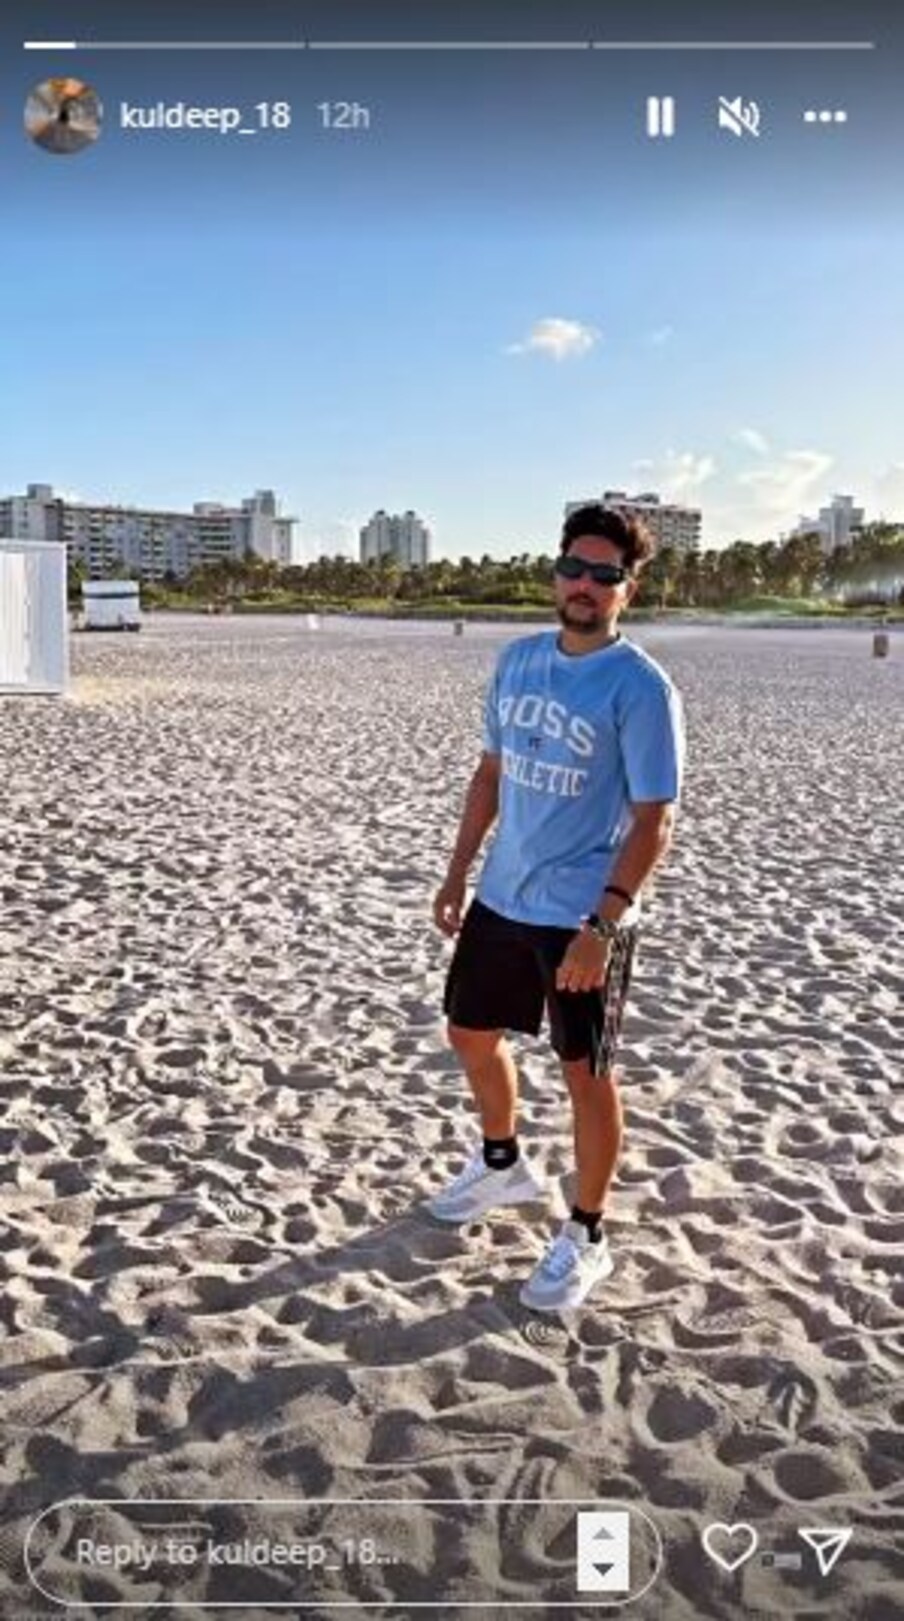  कुलदीप यादव ने अपनी इंस्टास्टोरी में खुद की बेहतरीन फोटो शेयर की है जिसमें वह आंखों पर काला चश्मा लगाए नजर आ रहे हैं. कुलदीप ने ब्लैक कलर के शॉट्स और आसमानी रंग का टी शर्ट पहना हुआ है. (Instagram)